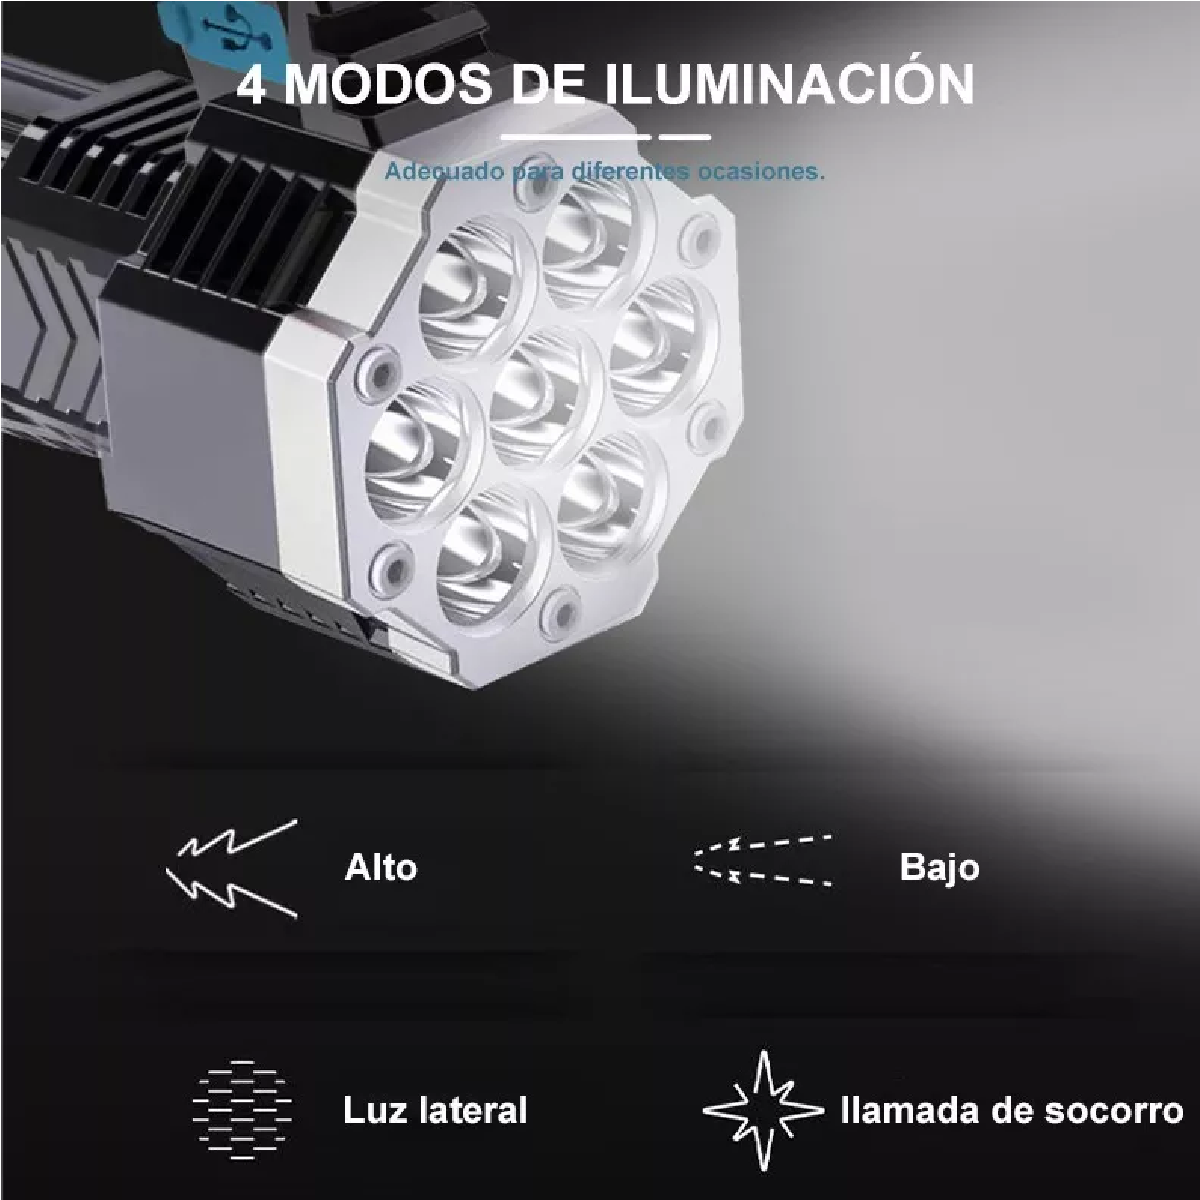 2 X Linterna LED Recargable Tactica Militar de Alta Potencia Lampara  Incluye BOX